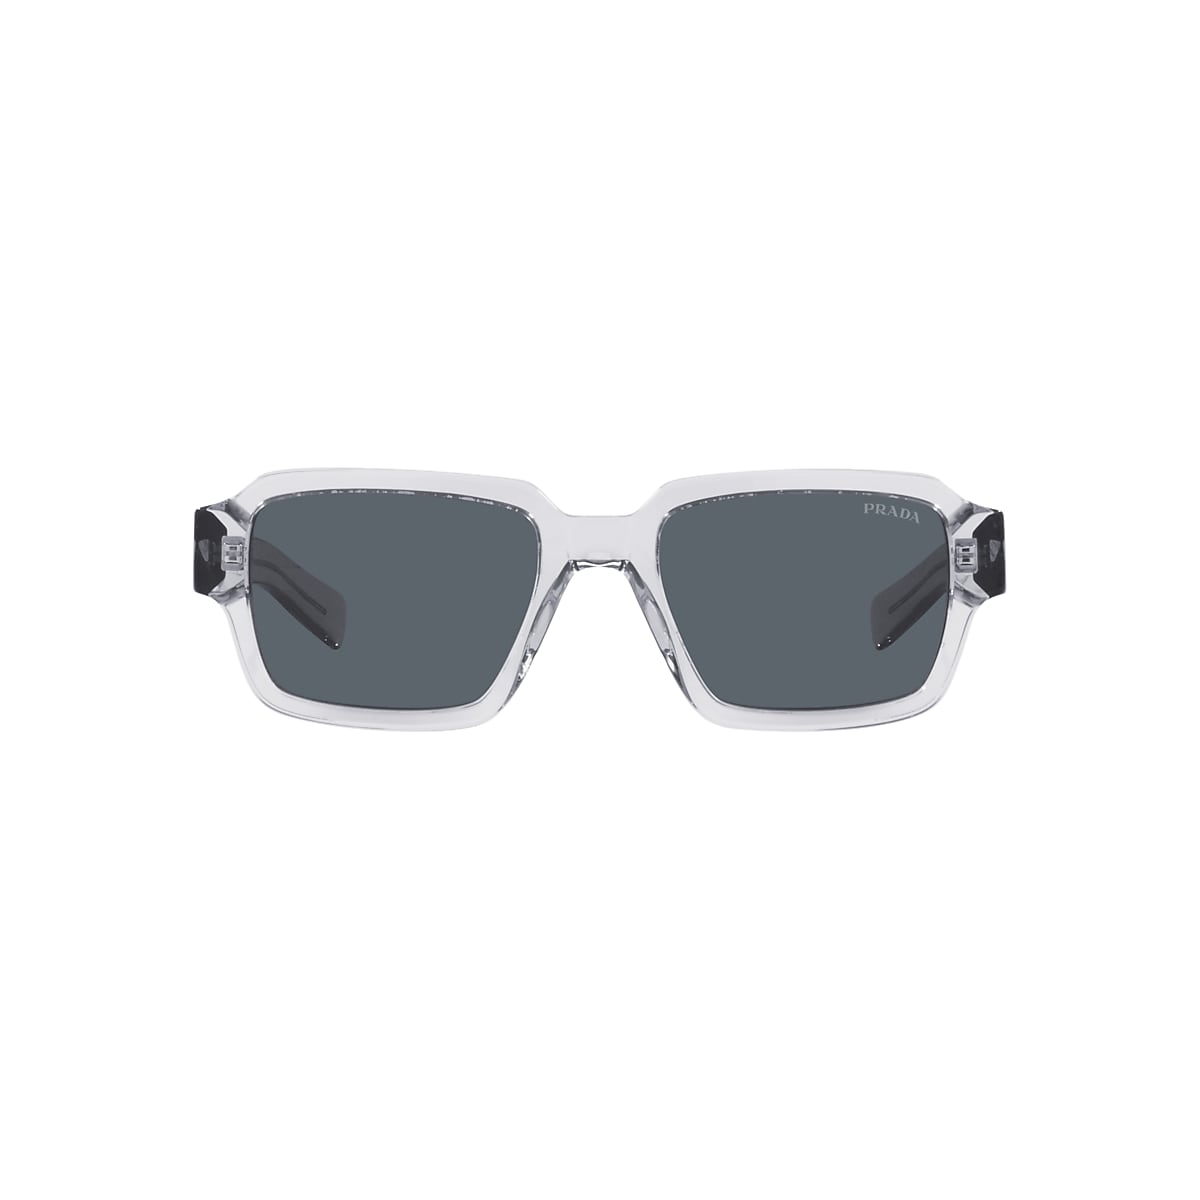 Louis Vuitton 2020 1.1 Millionaires Sunglasses - Black Sunglasses